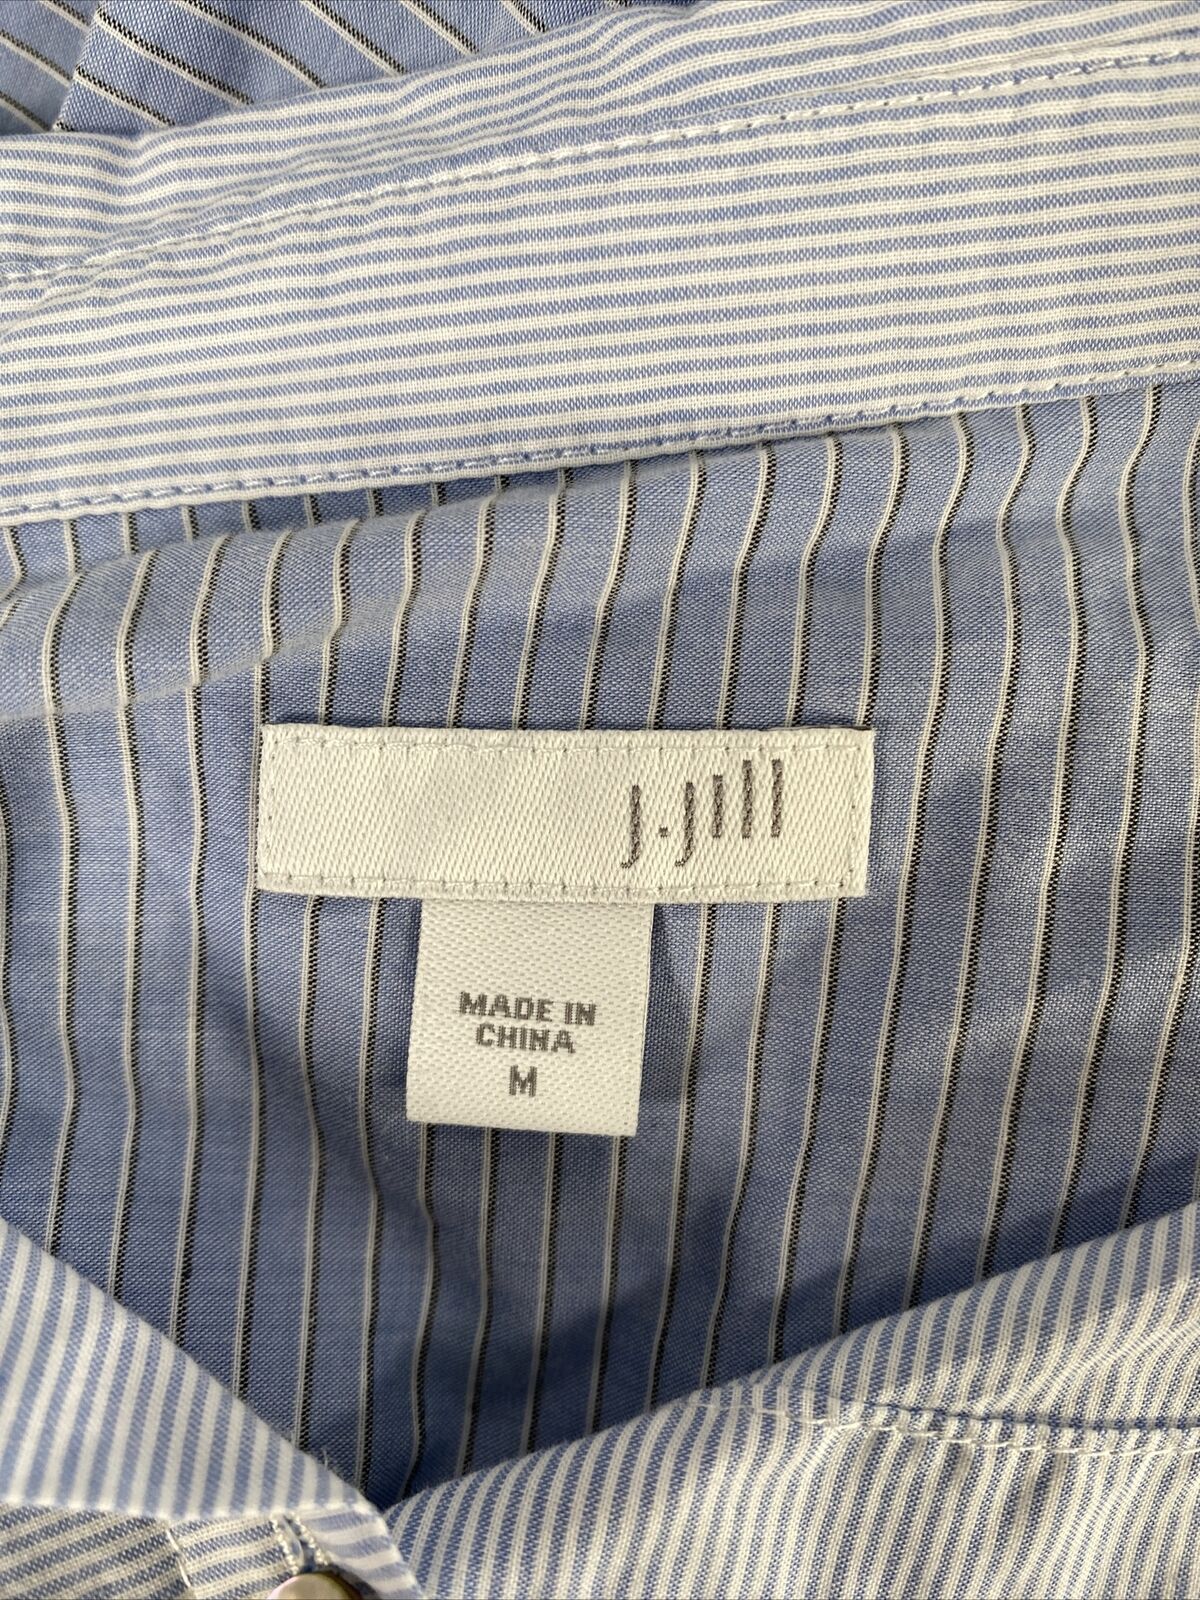 J. Jill Women's Blue Striped Long Sleeve Cotton Button Up Shirt - M